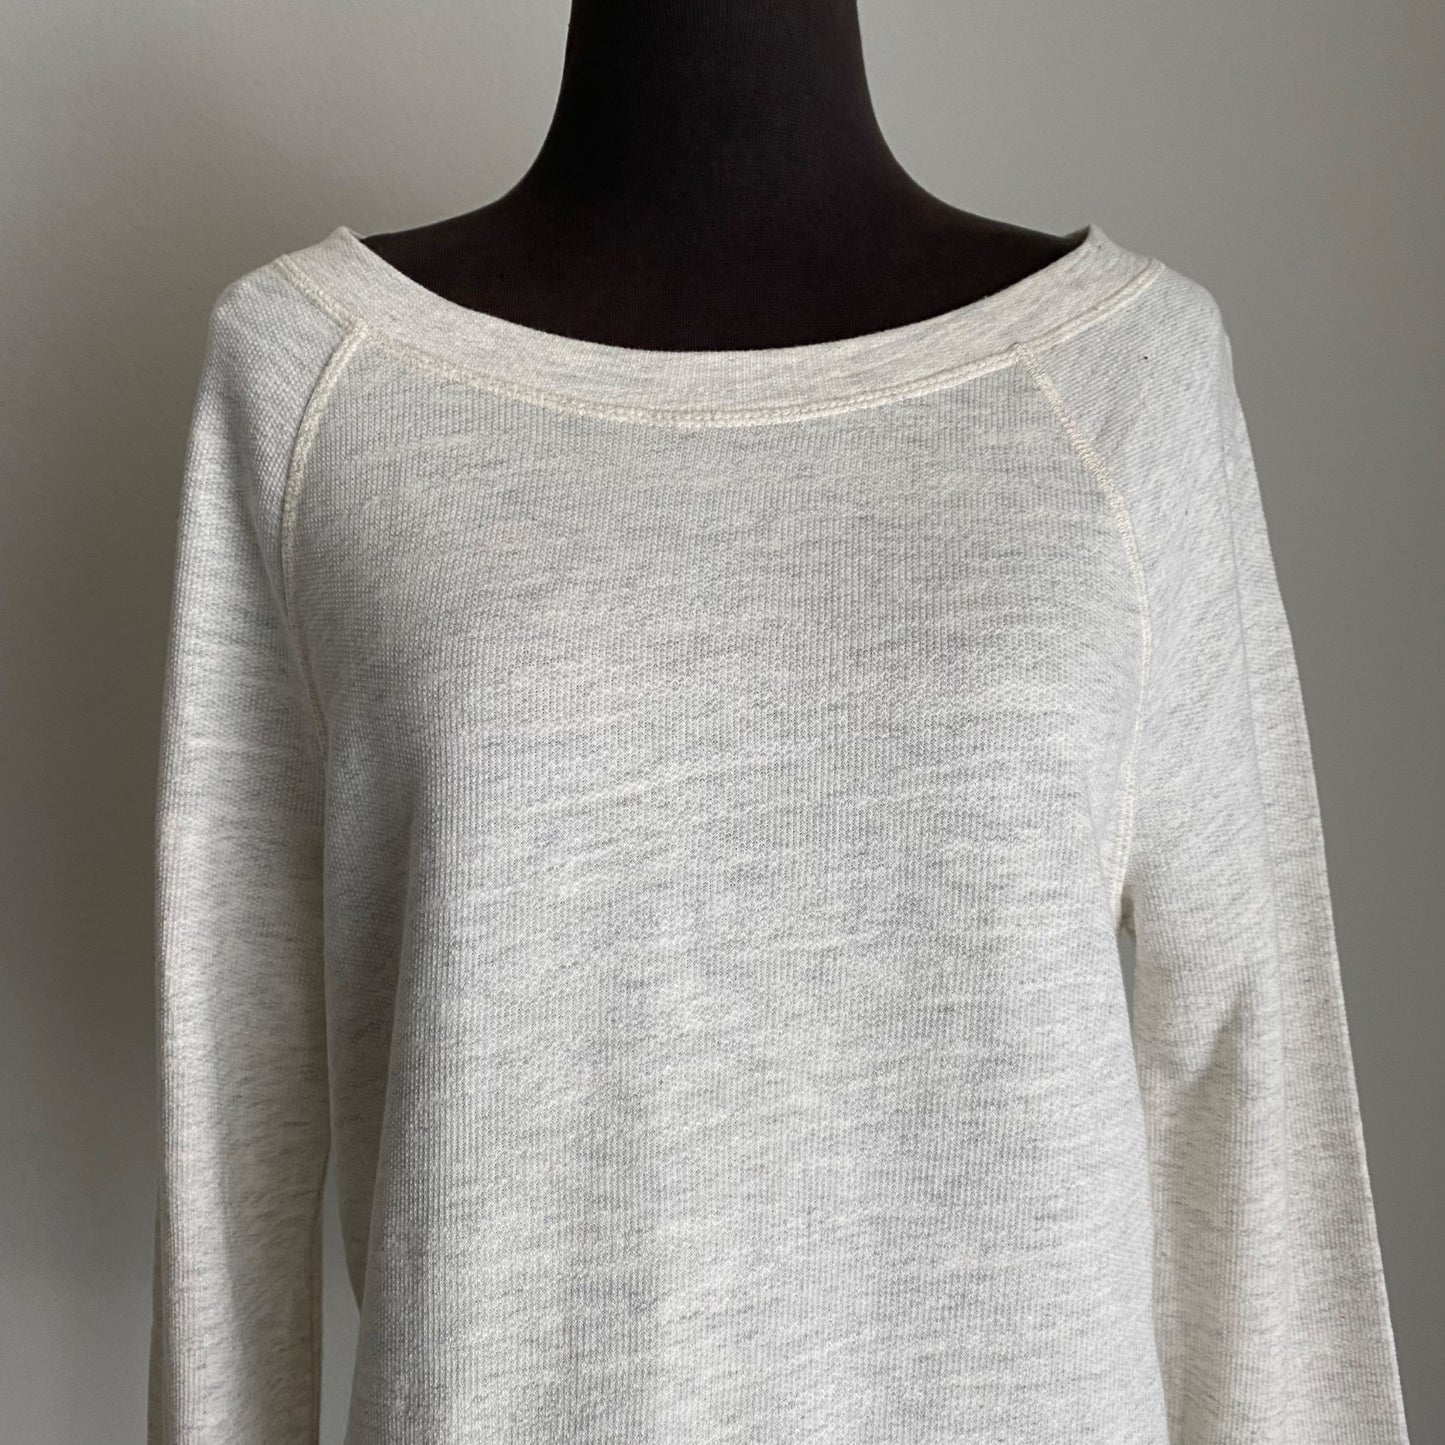 Lou & Grey sz S 100% Cotton boho long sleeve scoop neck lace trim knit top